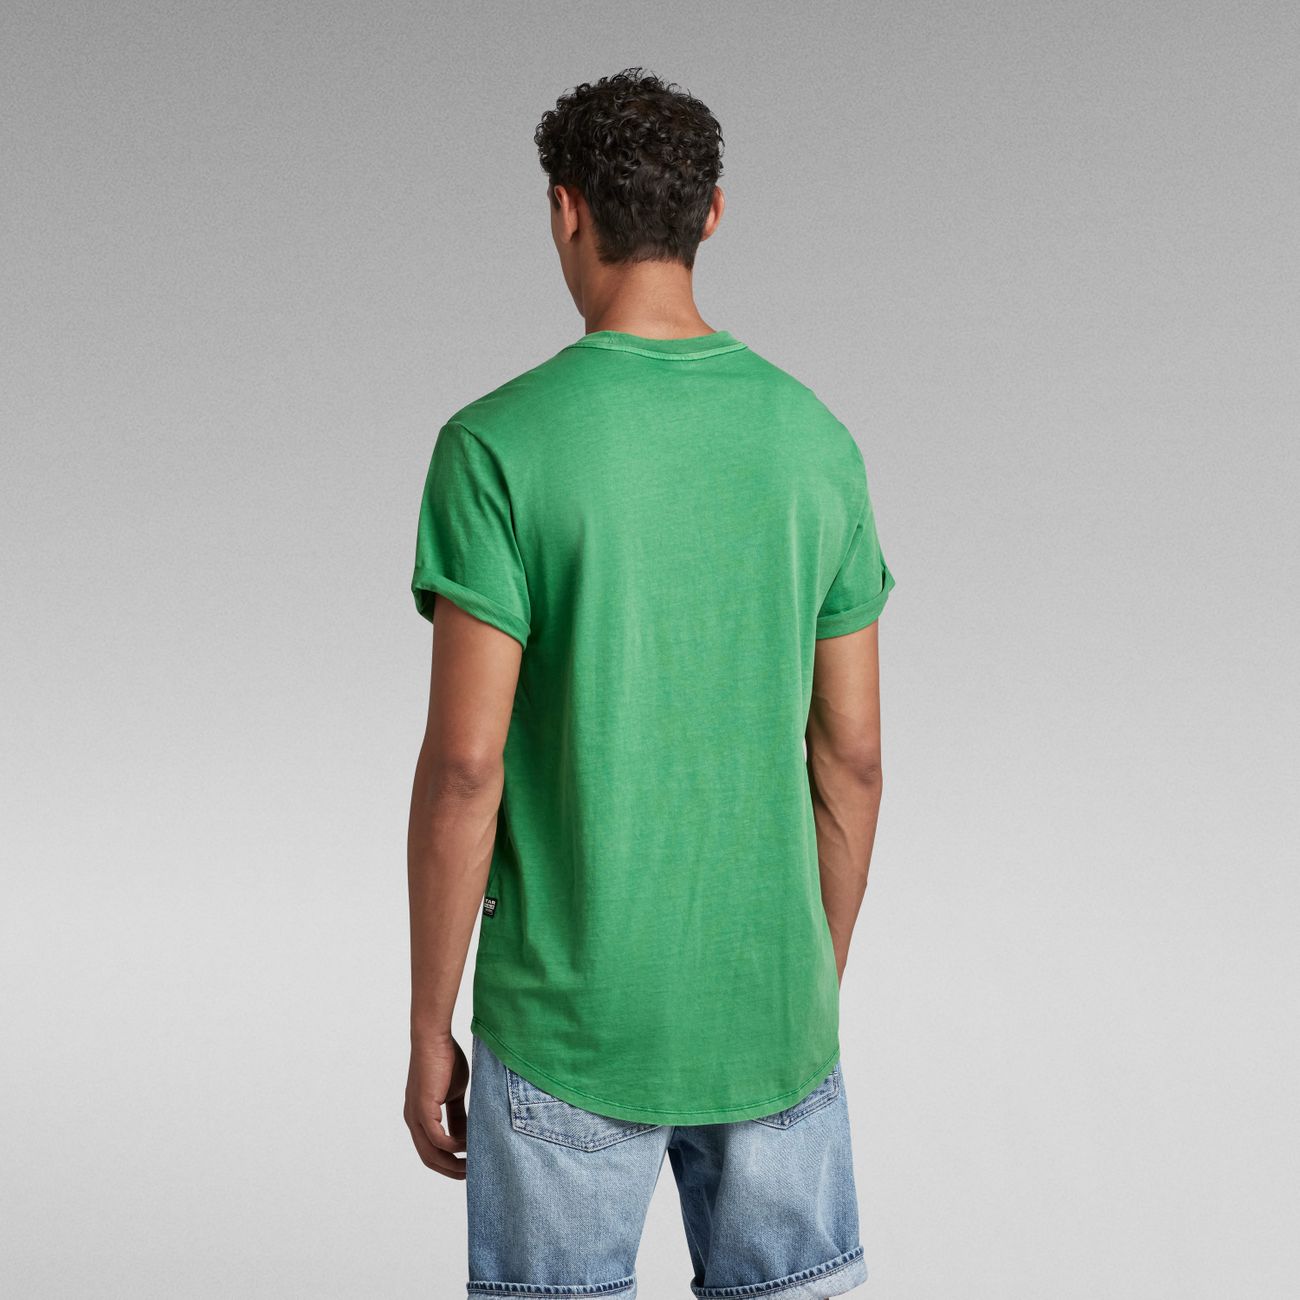 G-STAR RAW LASH R T Herren T-Shirt 100% Bio-Baumwolle